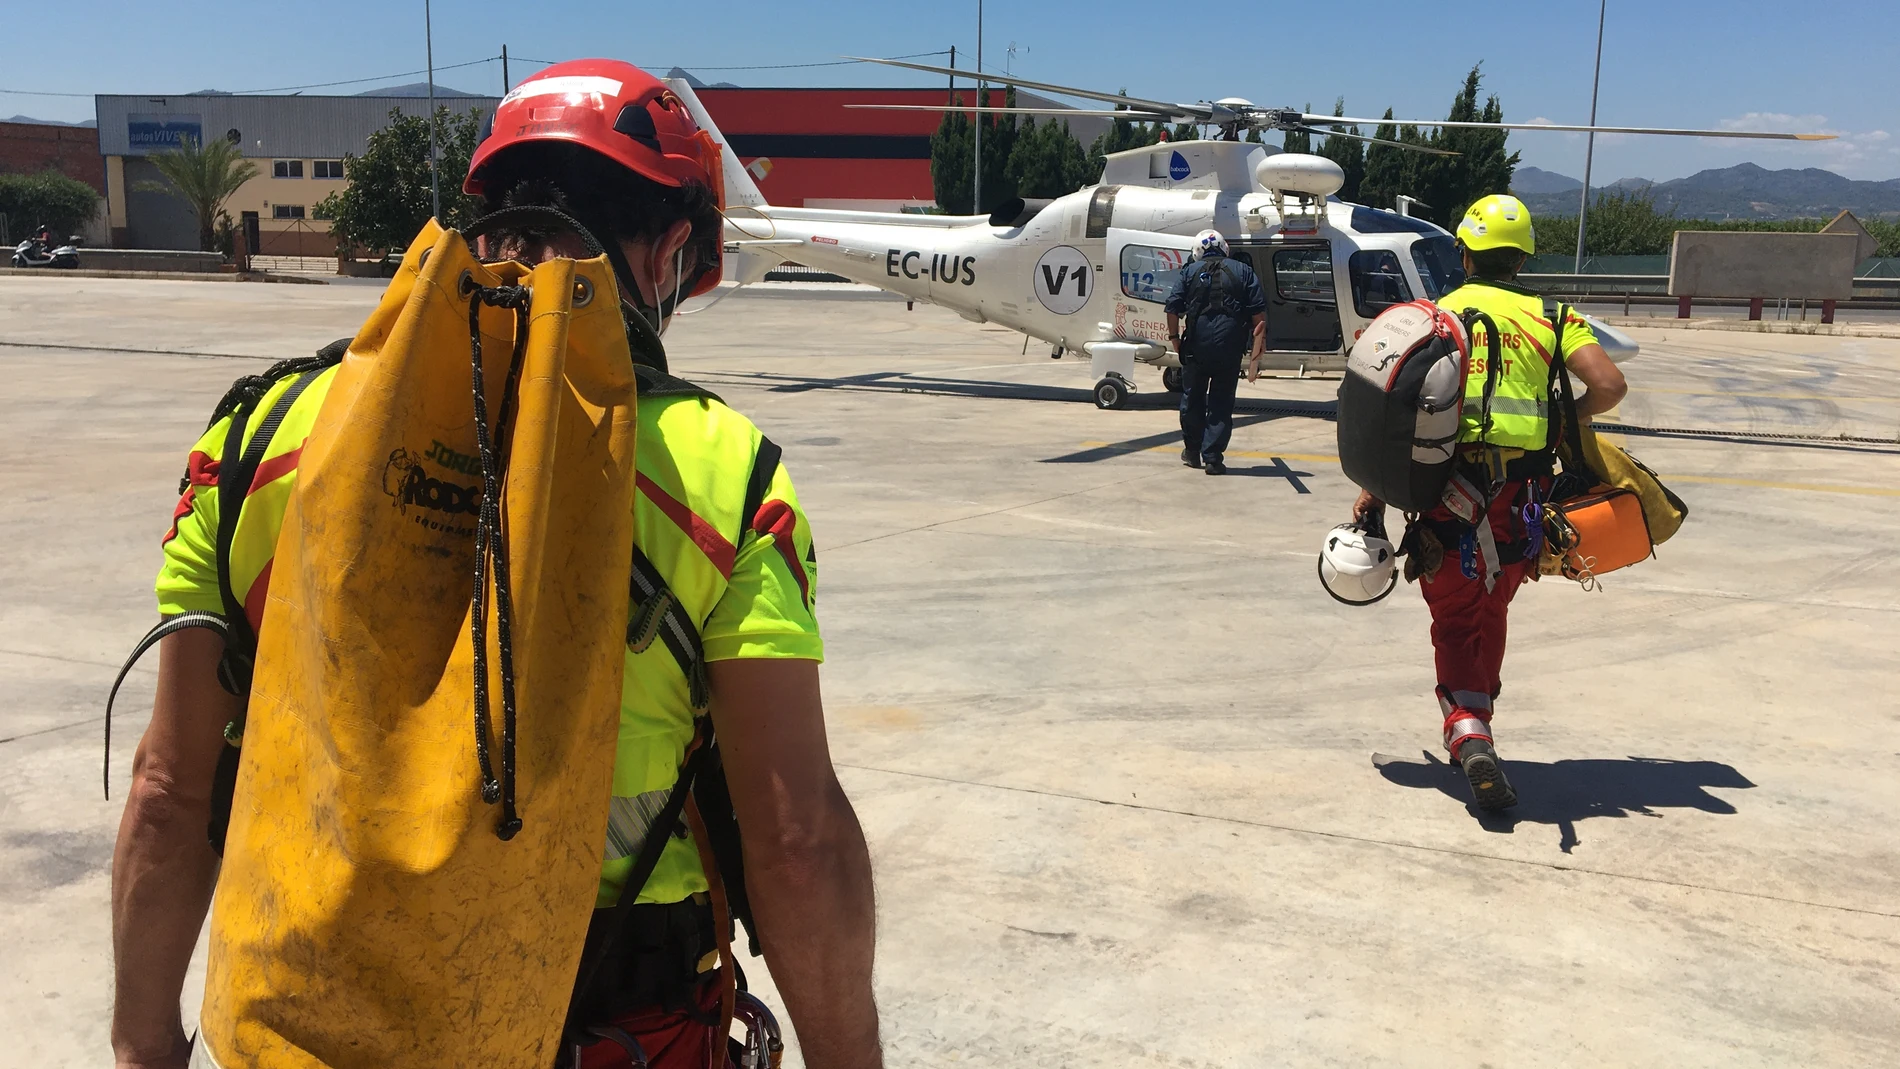 Emergencias de la Generalitat coordina 74 rescates con helicóptero durante el primer semestre de 2020